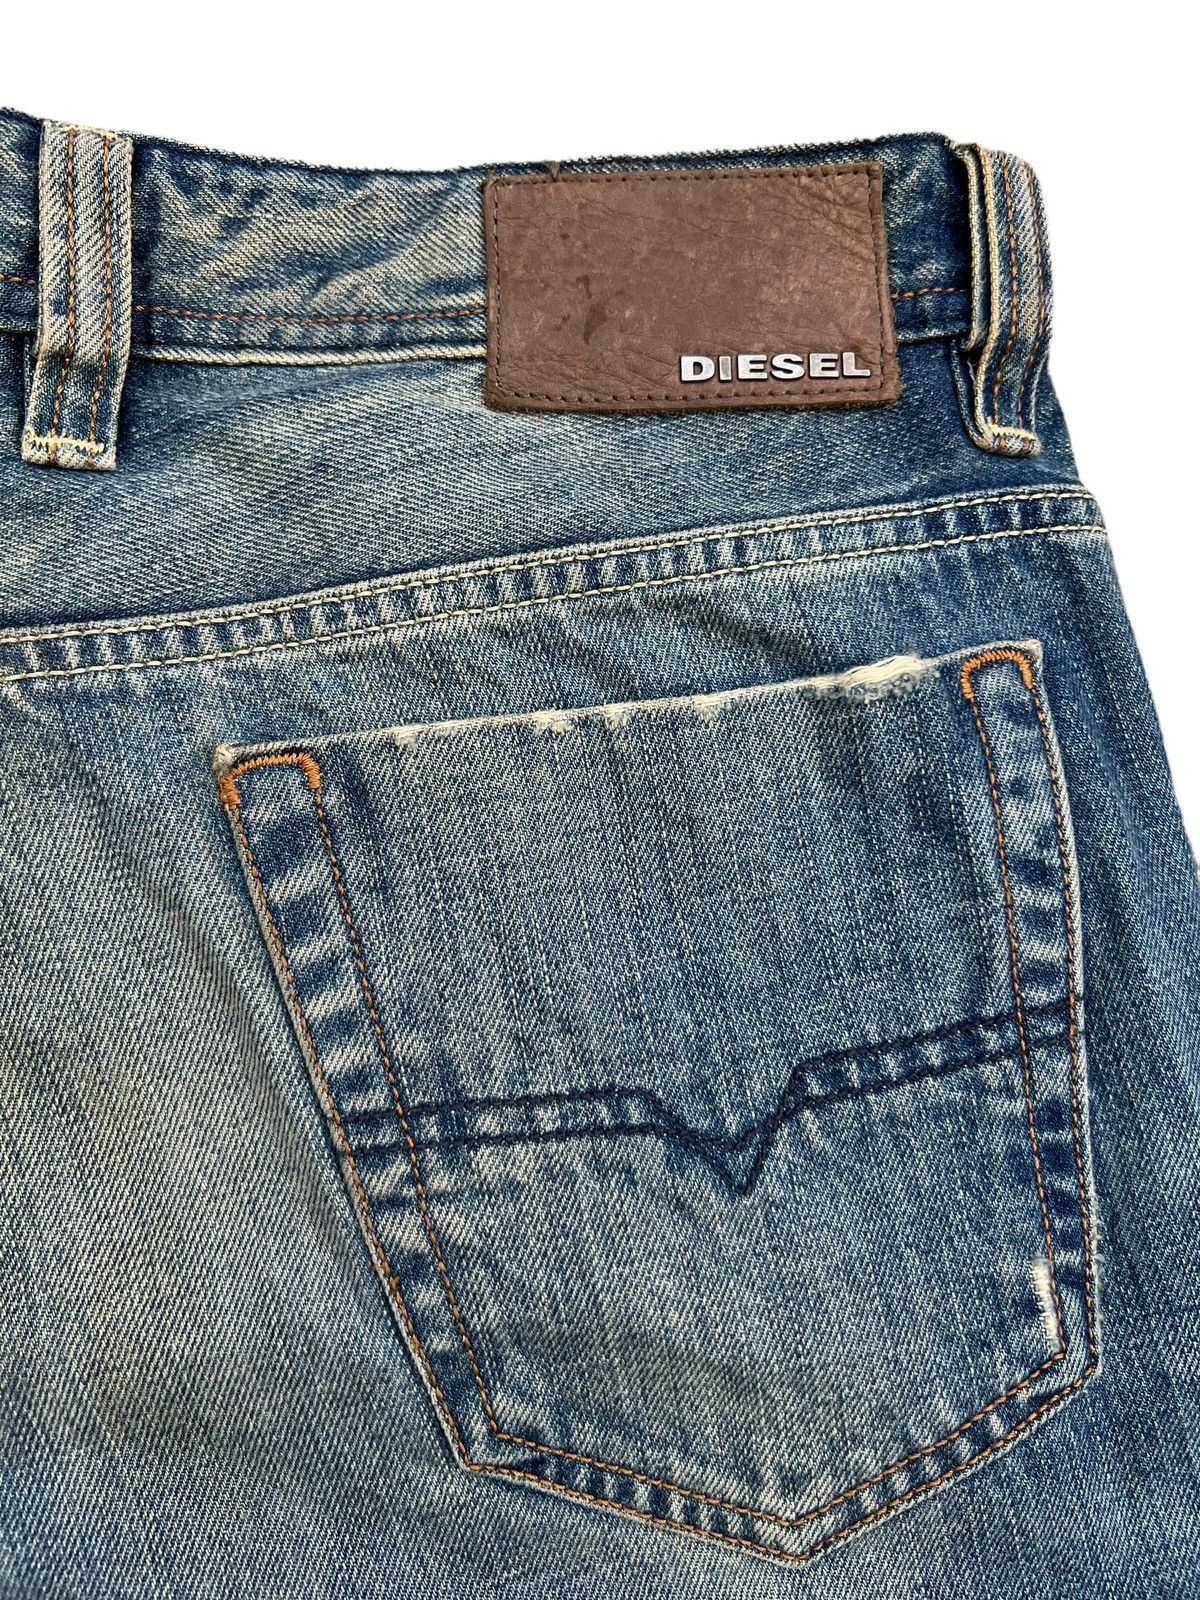 Diesel Mudwash Distressed Straightcut Denim Jeans 33x32 - 9